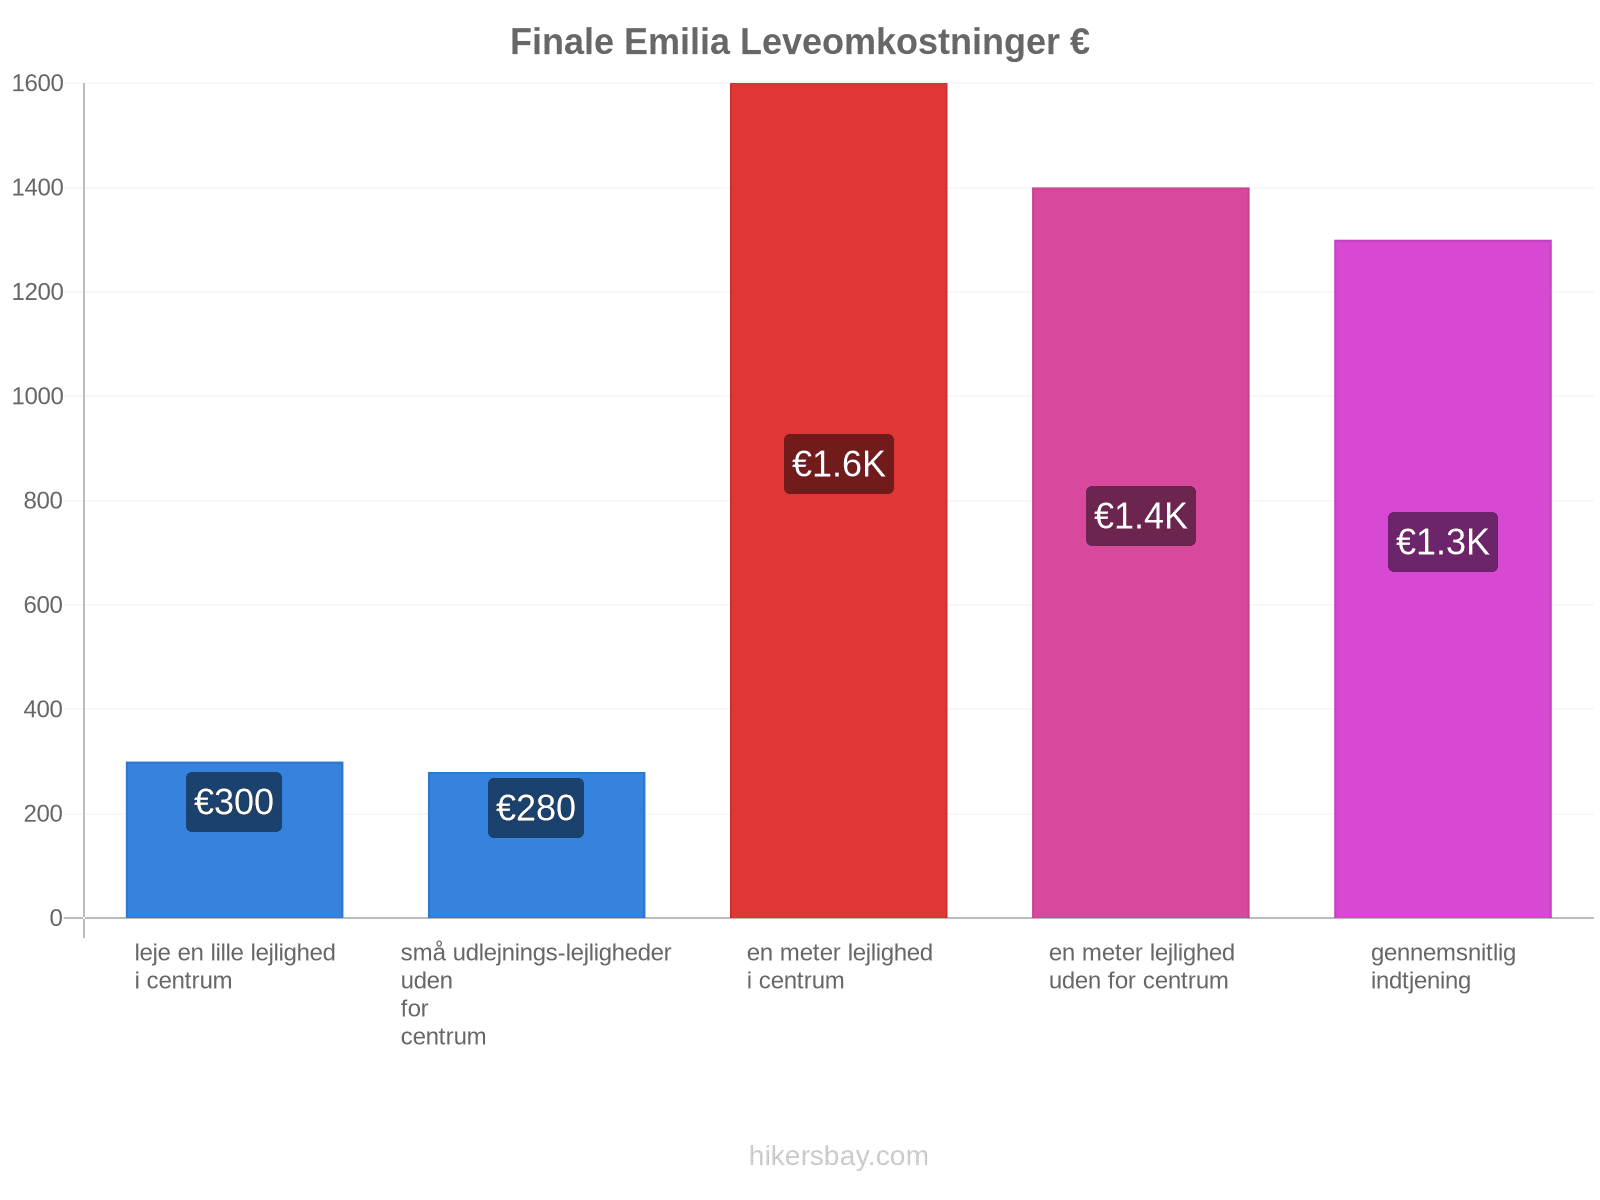 Finale Emilia leveomkostninger hikersbay.com